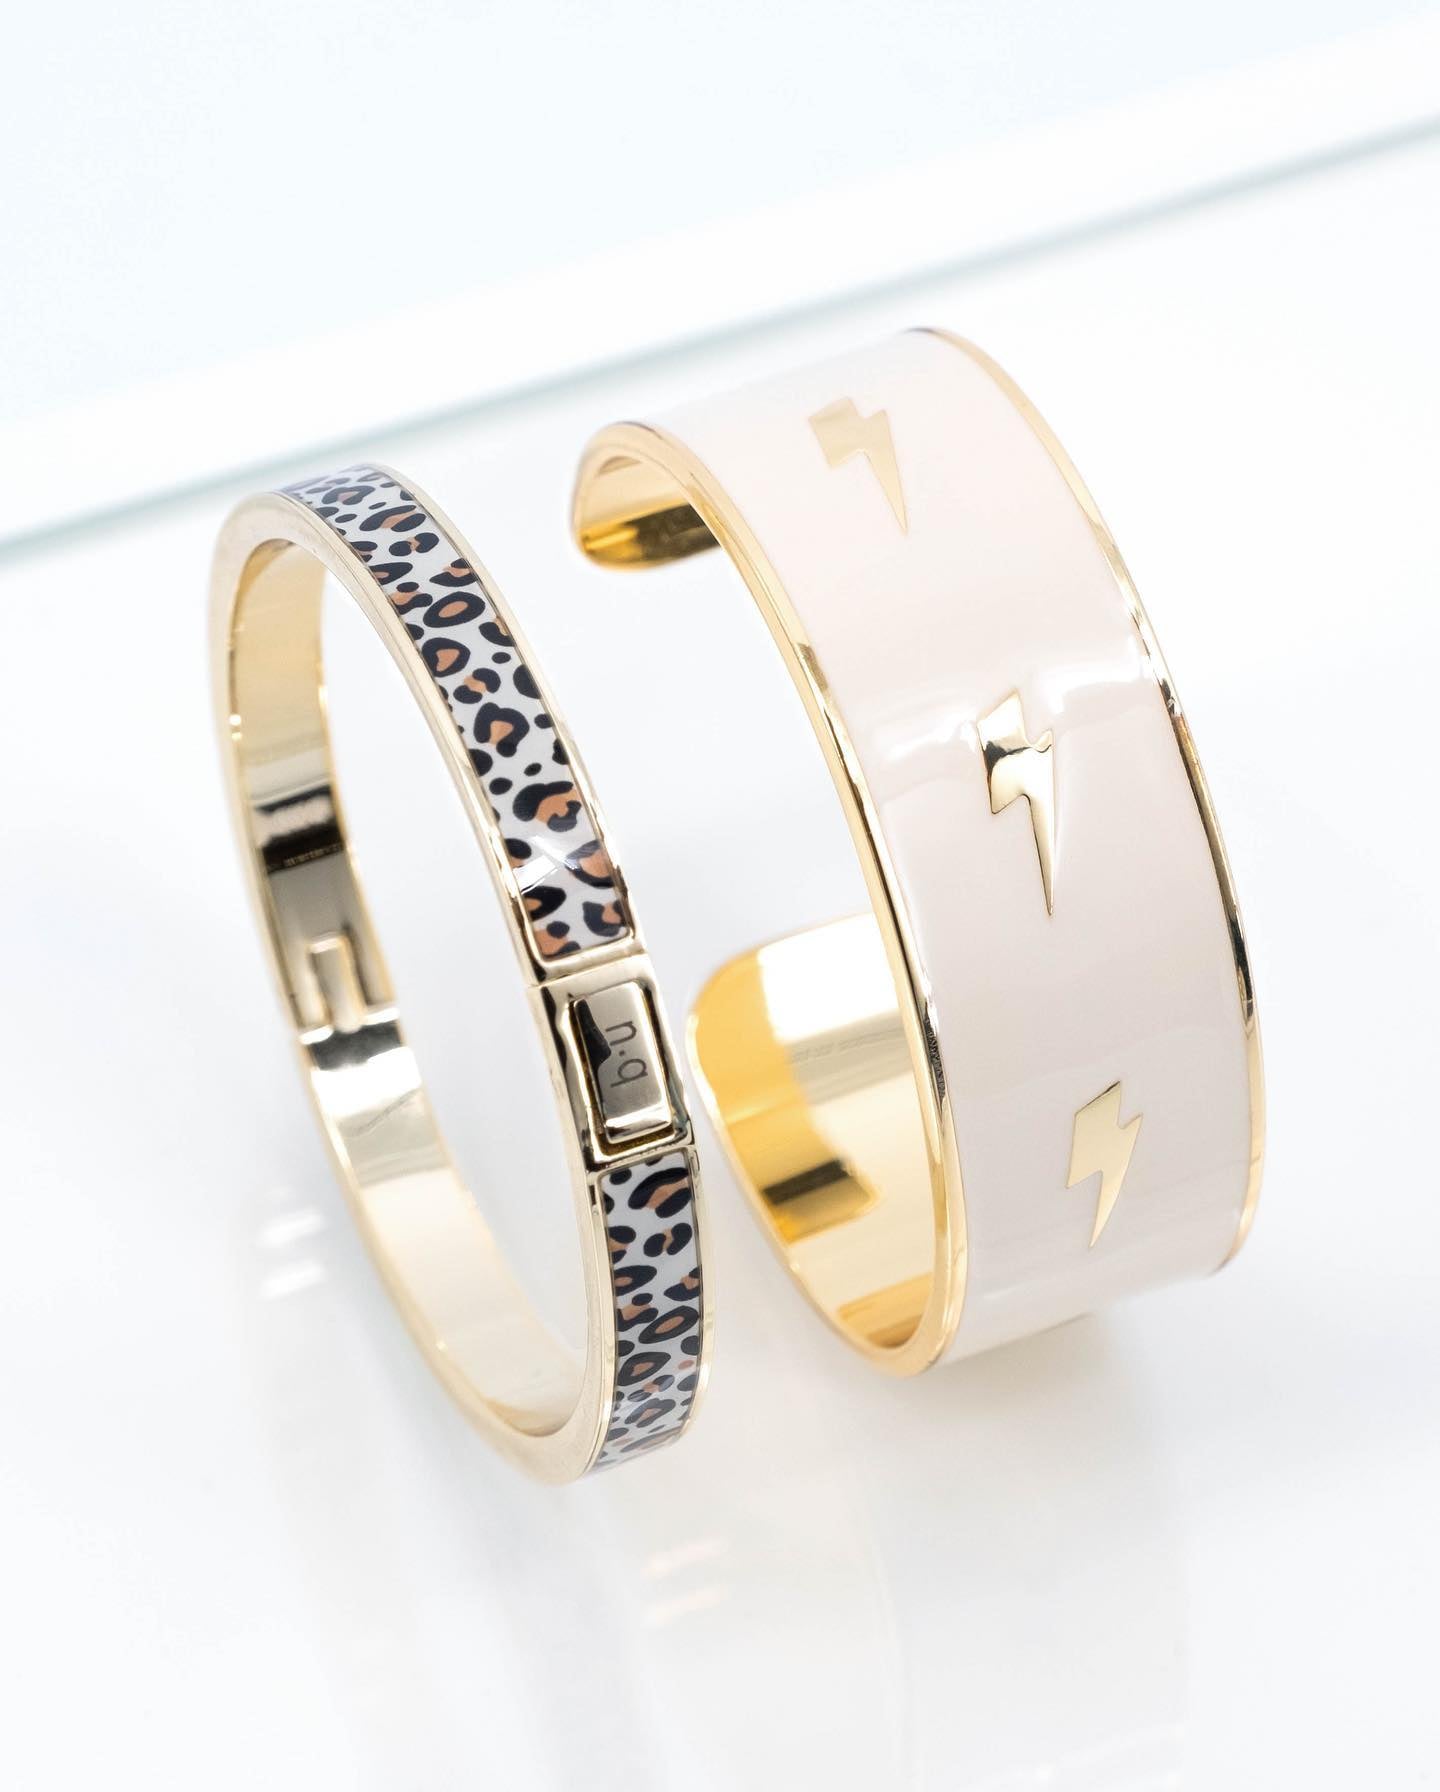 https://www.instagram.com/p/Cz17fAUIO0D/[SHARP-CAPTION]Chez Bangle-Up, on ose mixer les formes et les imprimés ! ✨

Notre Ziggy peut aussi s’accompagner de notre bracelet bangle blanc sable 🤍

Et pour plus d’idées d’accumulation, rendez-vous en ligne ! 

#bangleupparis #frenchjewelry #jewelry #bracelet #newprint #gift #giftideas